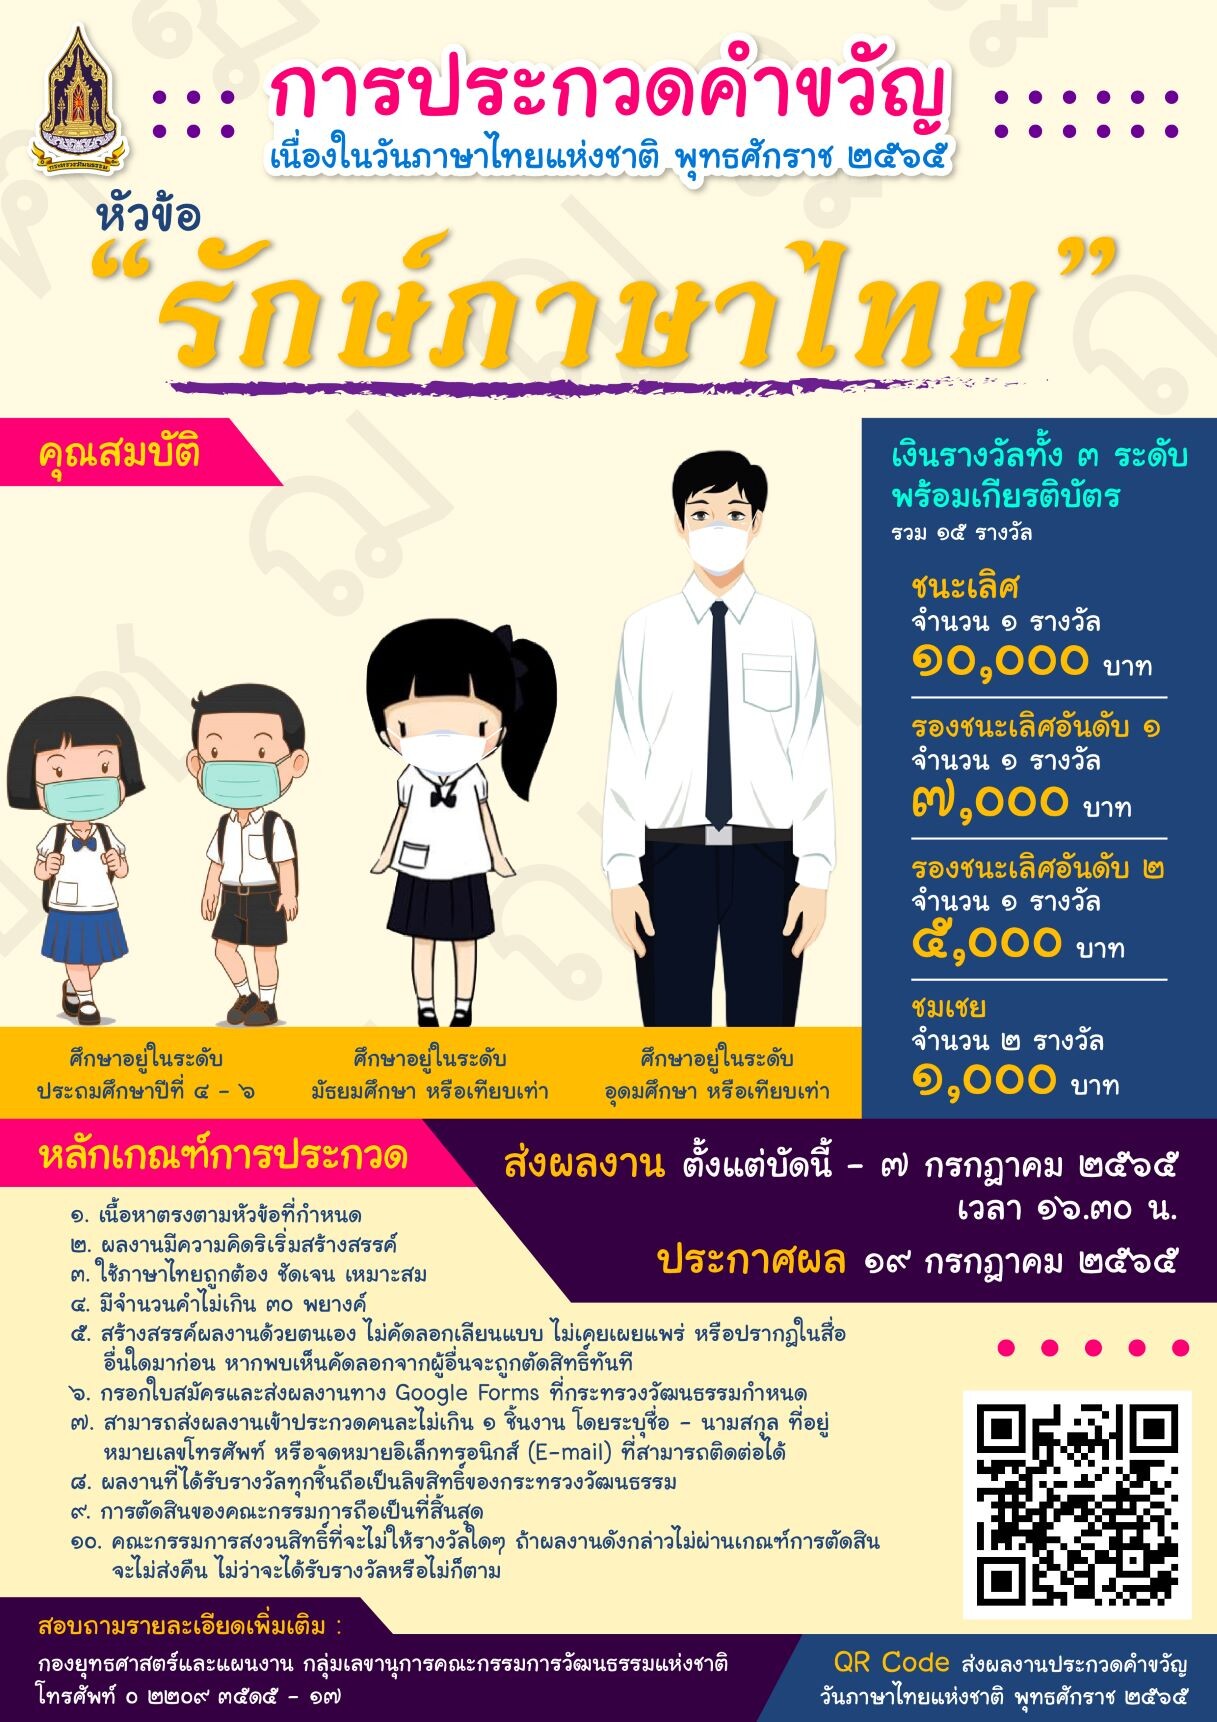 วธ. ชวนเด็กและเยาวชน ประชันคำขวัญ เนื่องในวันภาษาไทยแห่งชาติ 29 กรกฎาคม หัวข้อ "รักษ์ภาษาไทย" ชิงทุนการศึกษานับหมื่น ตั้งแต่วันนี้ - 7 ก.ค. 2565.